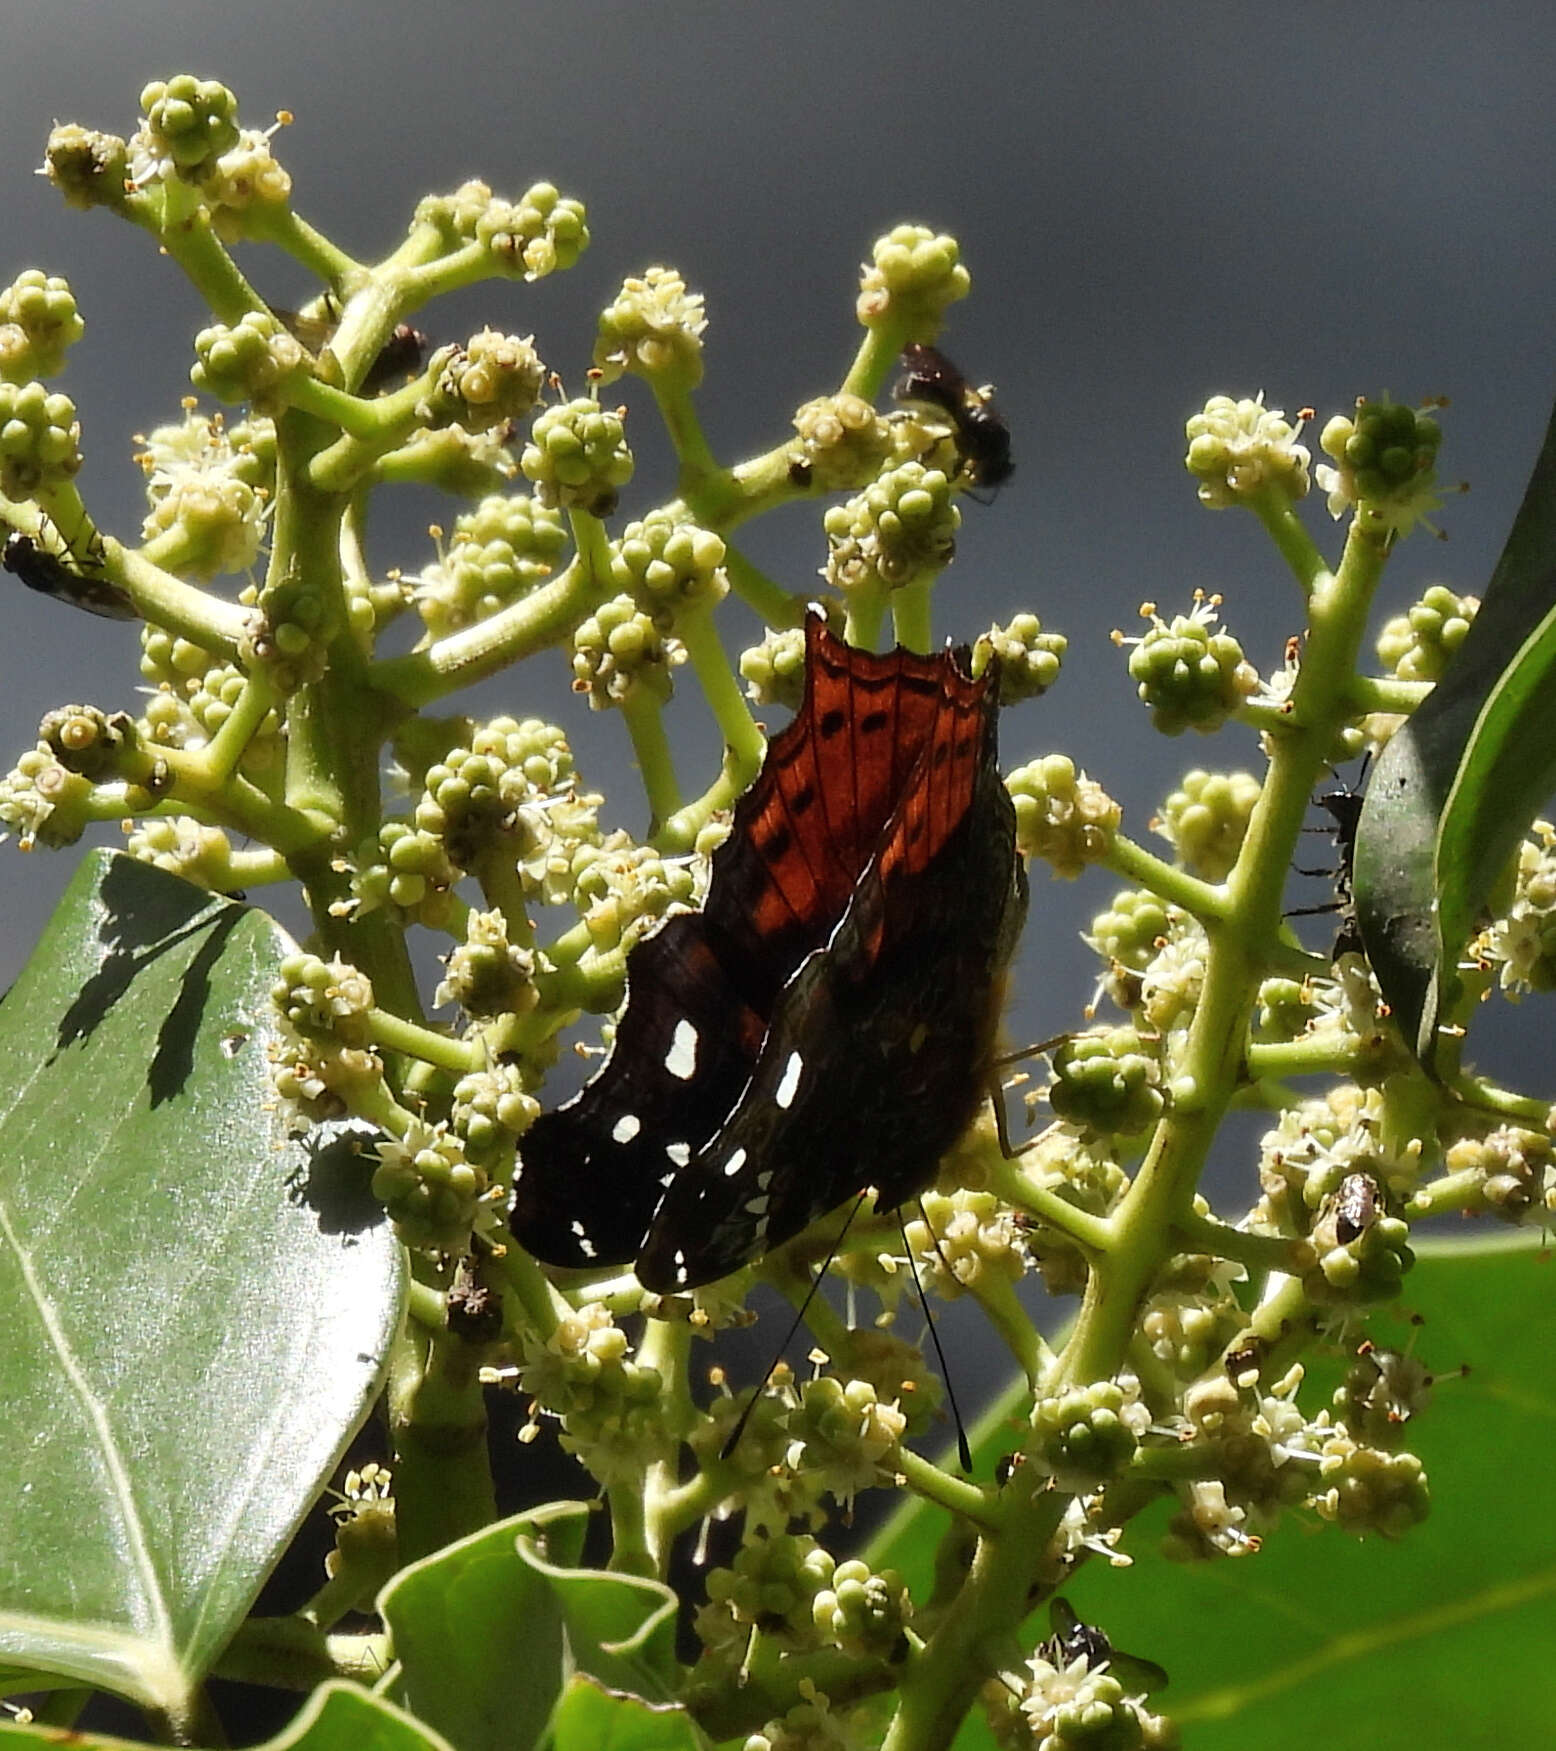 Imagem de Hypanartia trimaculata